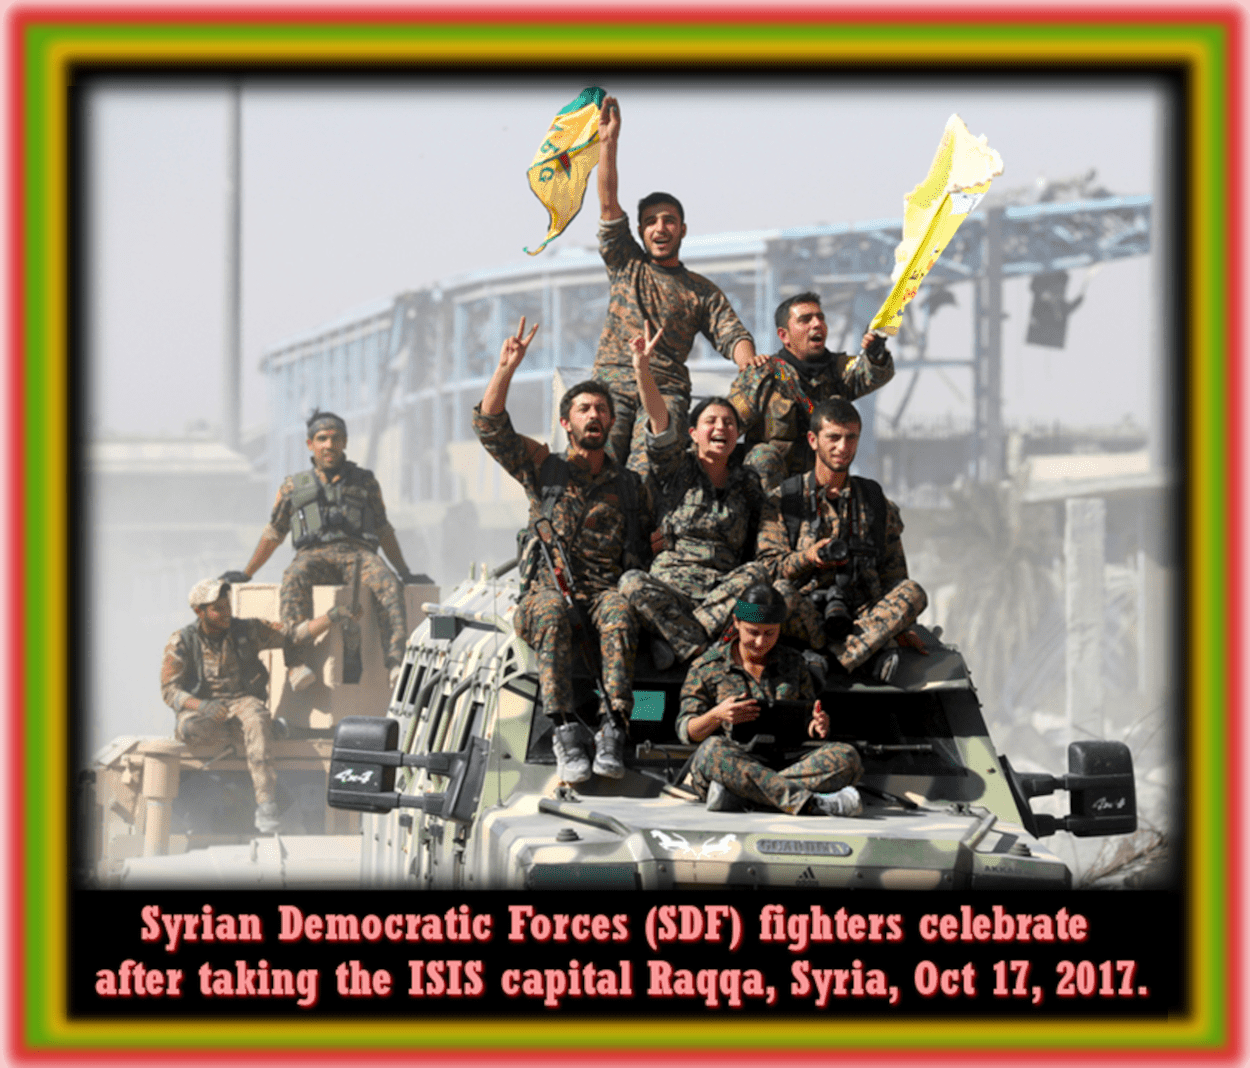 Αναγεννημένη Raqqa  μέσα απο την επανάσταση της Rojava: Κριτική και προτάσεις από τη διαβούλευση με τους πολίτες